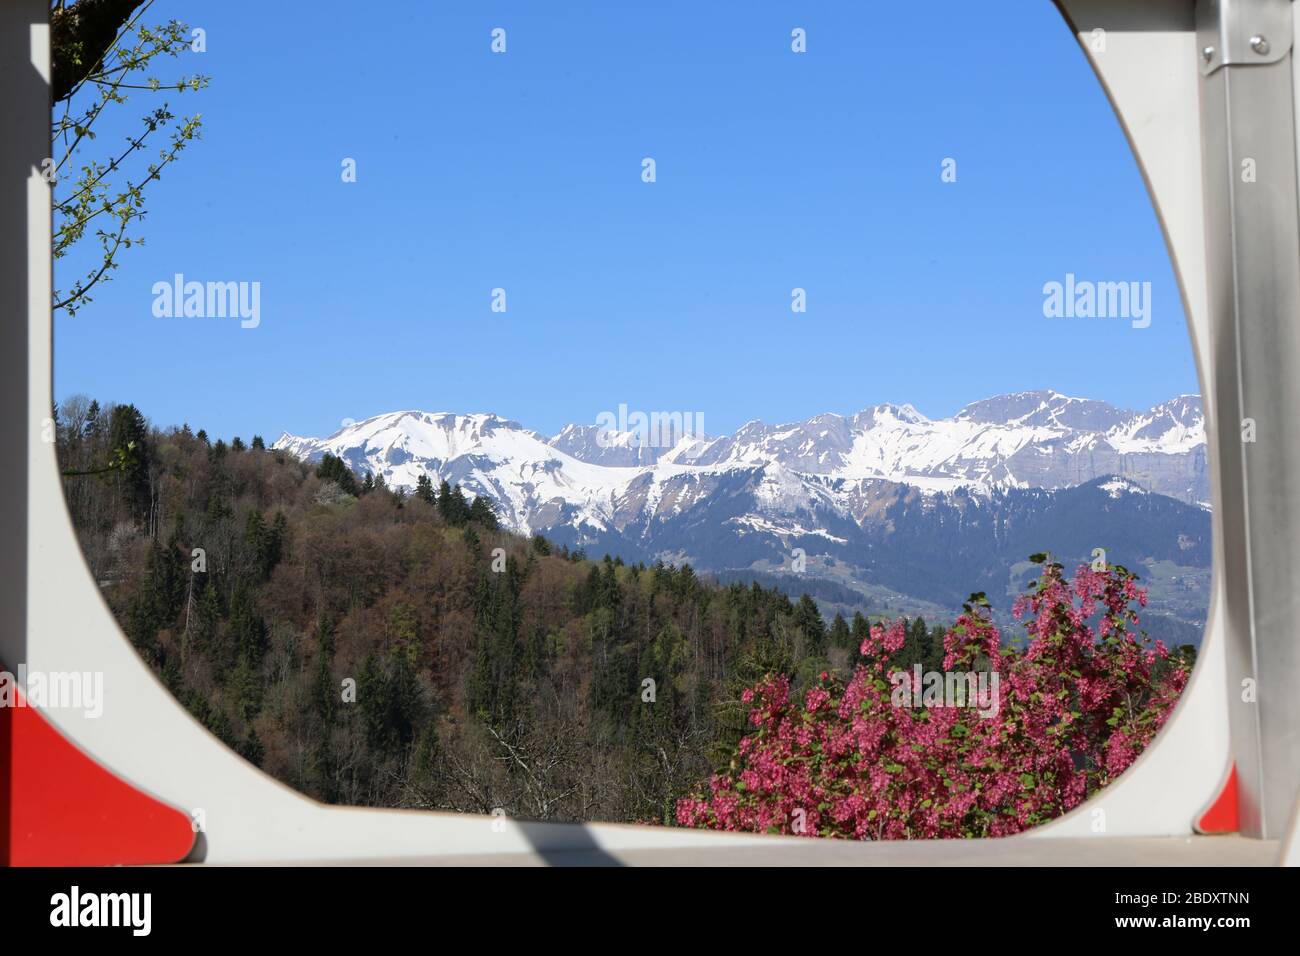 Vue sur la chaîne des Aravis. Alpes françaises; Saint-Gervais-les-Bains. haute-Savoie. France. Stock Photo